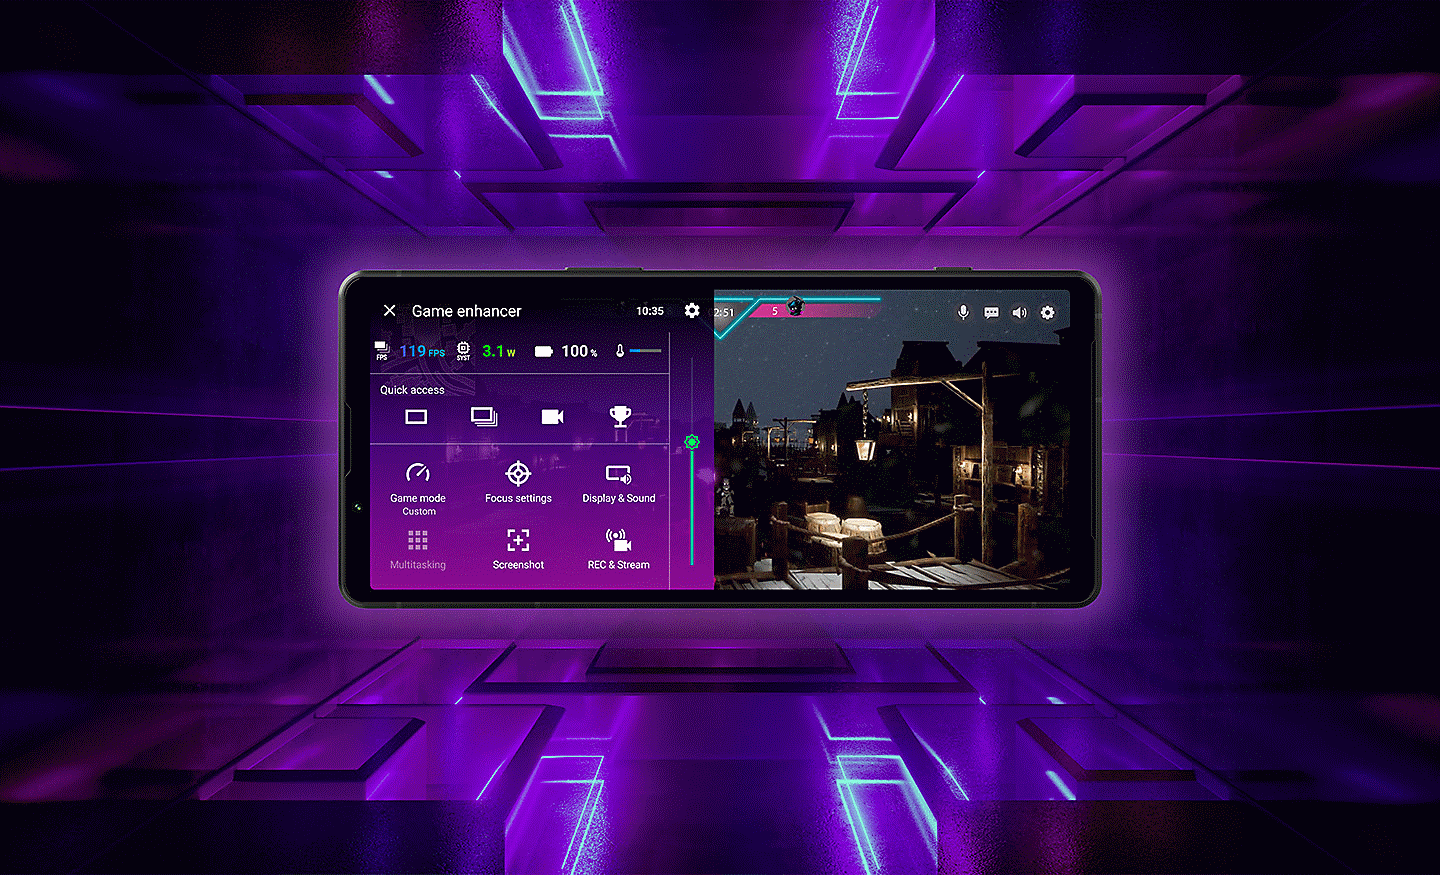 Hình ảnh Xperia 5 V với giao diện Game enhancer trên màn hình, cùng nền hiệu ứng 3 chiều màu tím